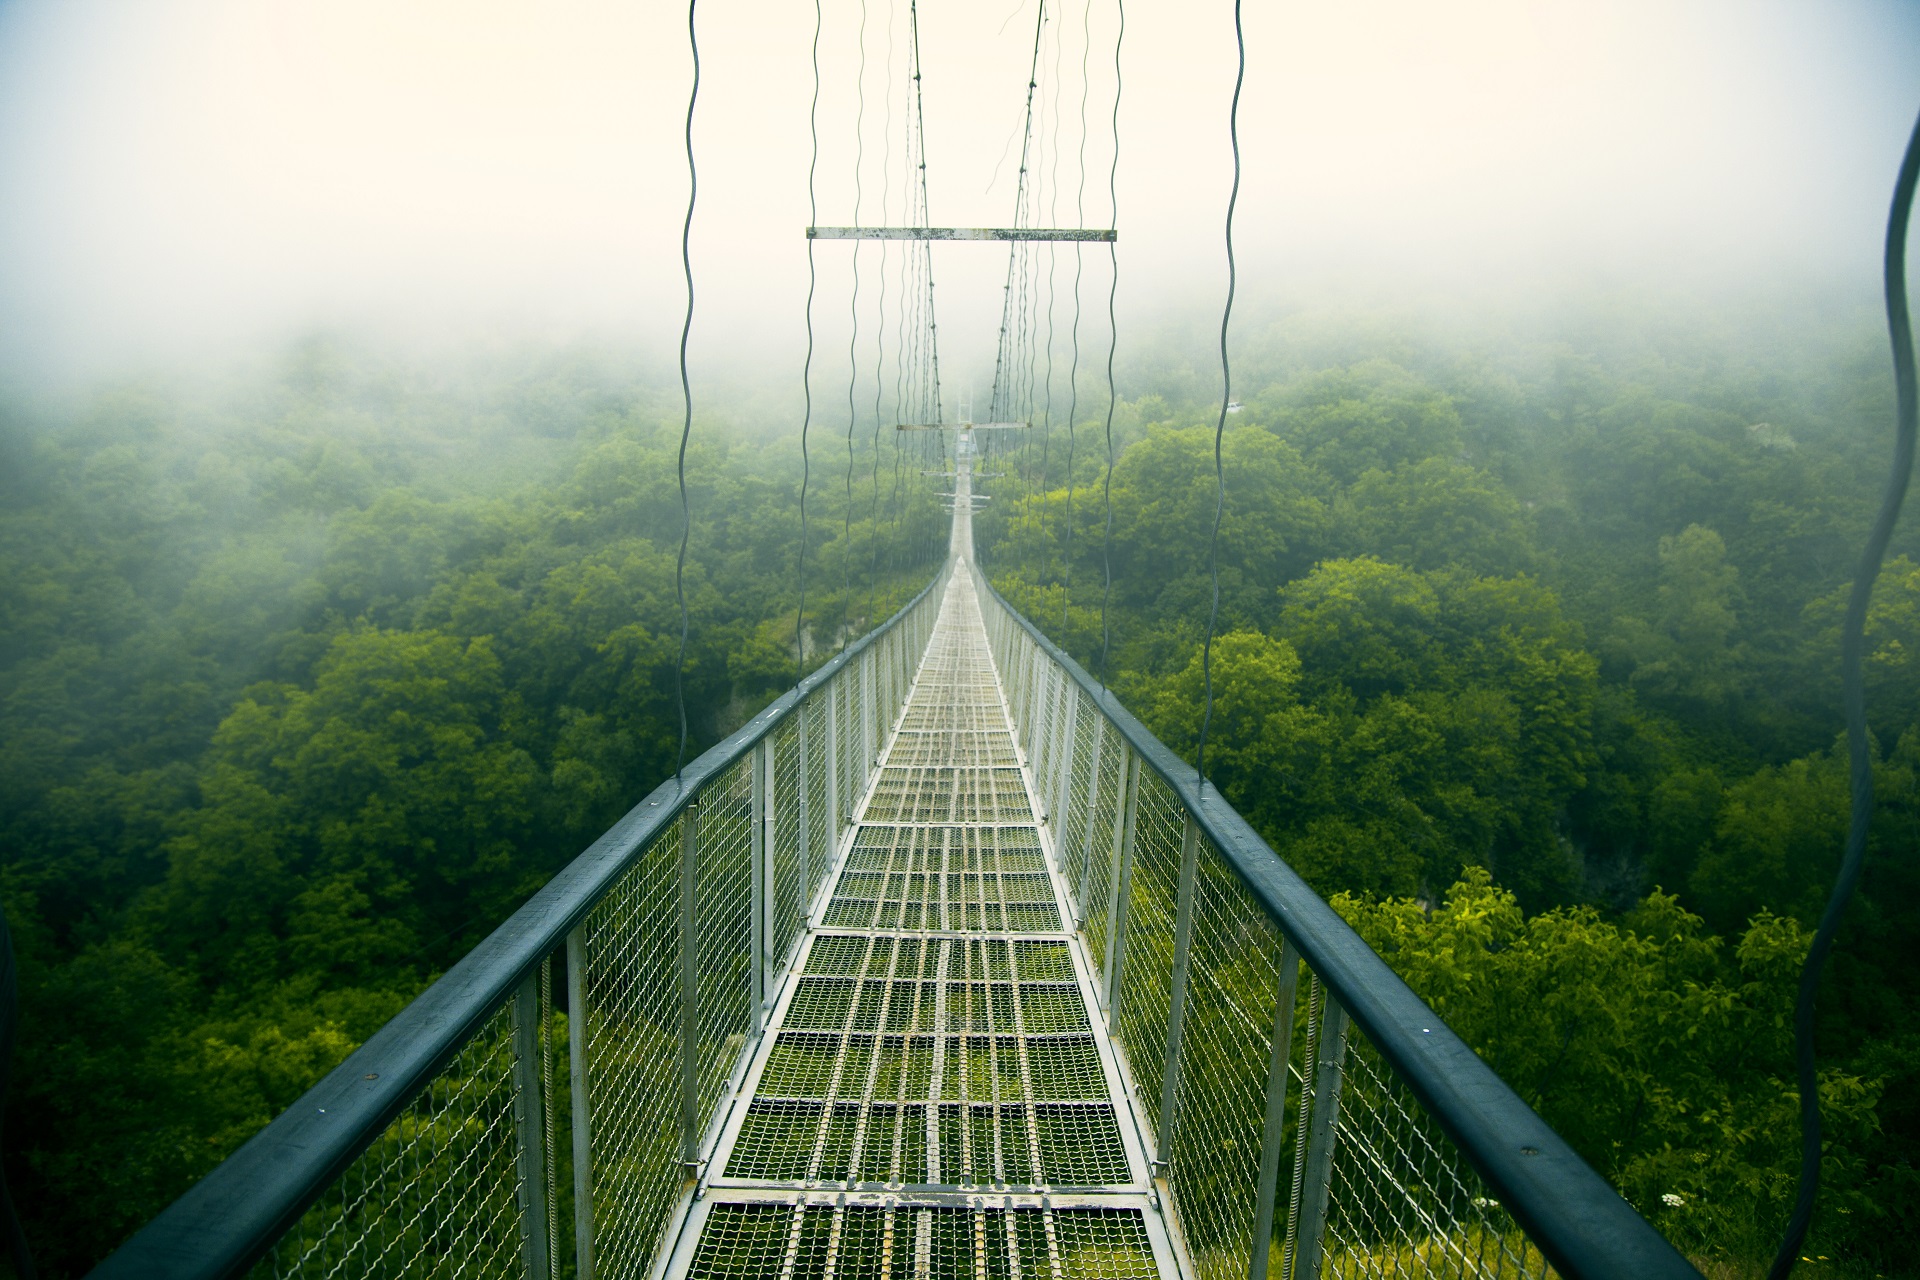 Die von Hand gebaute Hängebrücke, die zum Ort Khndzoresk führt, ist von Nebel umhüllt.